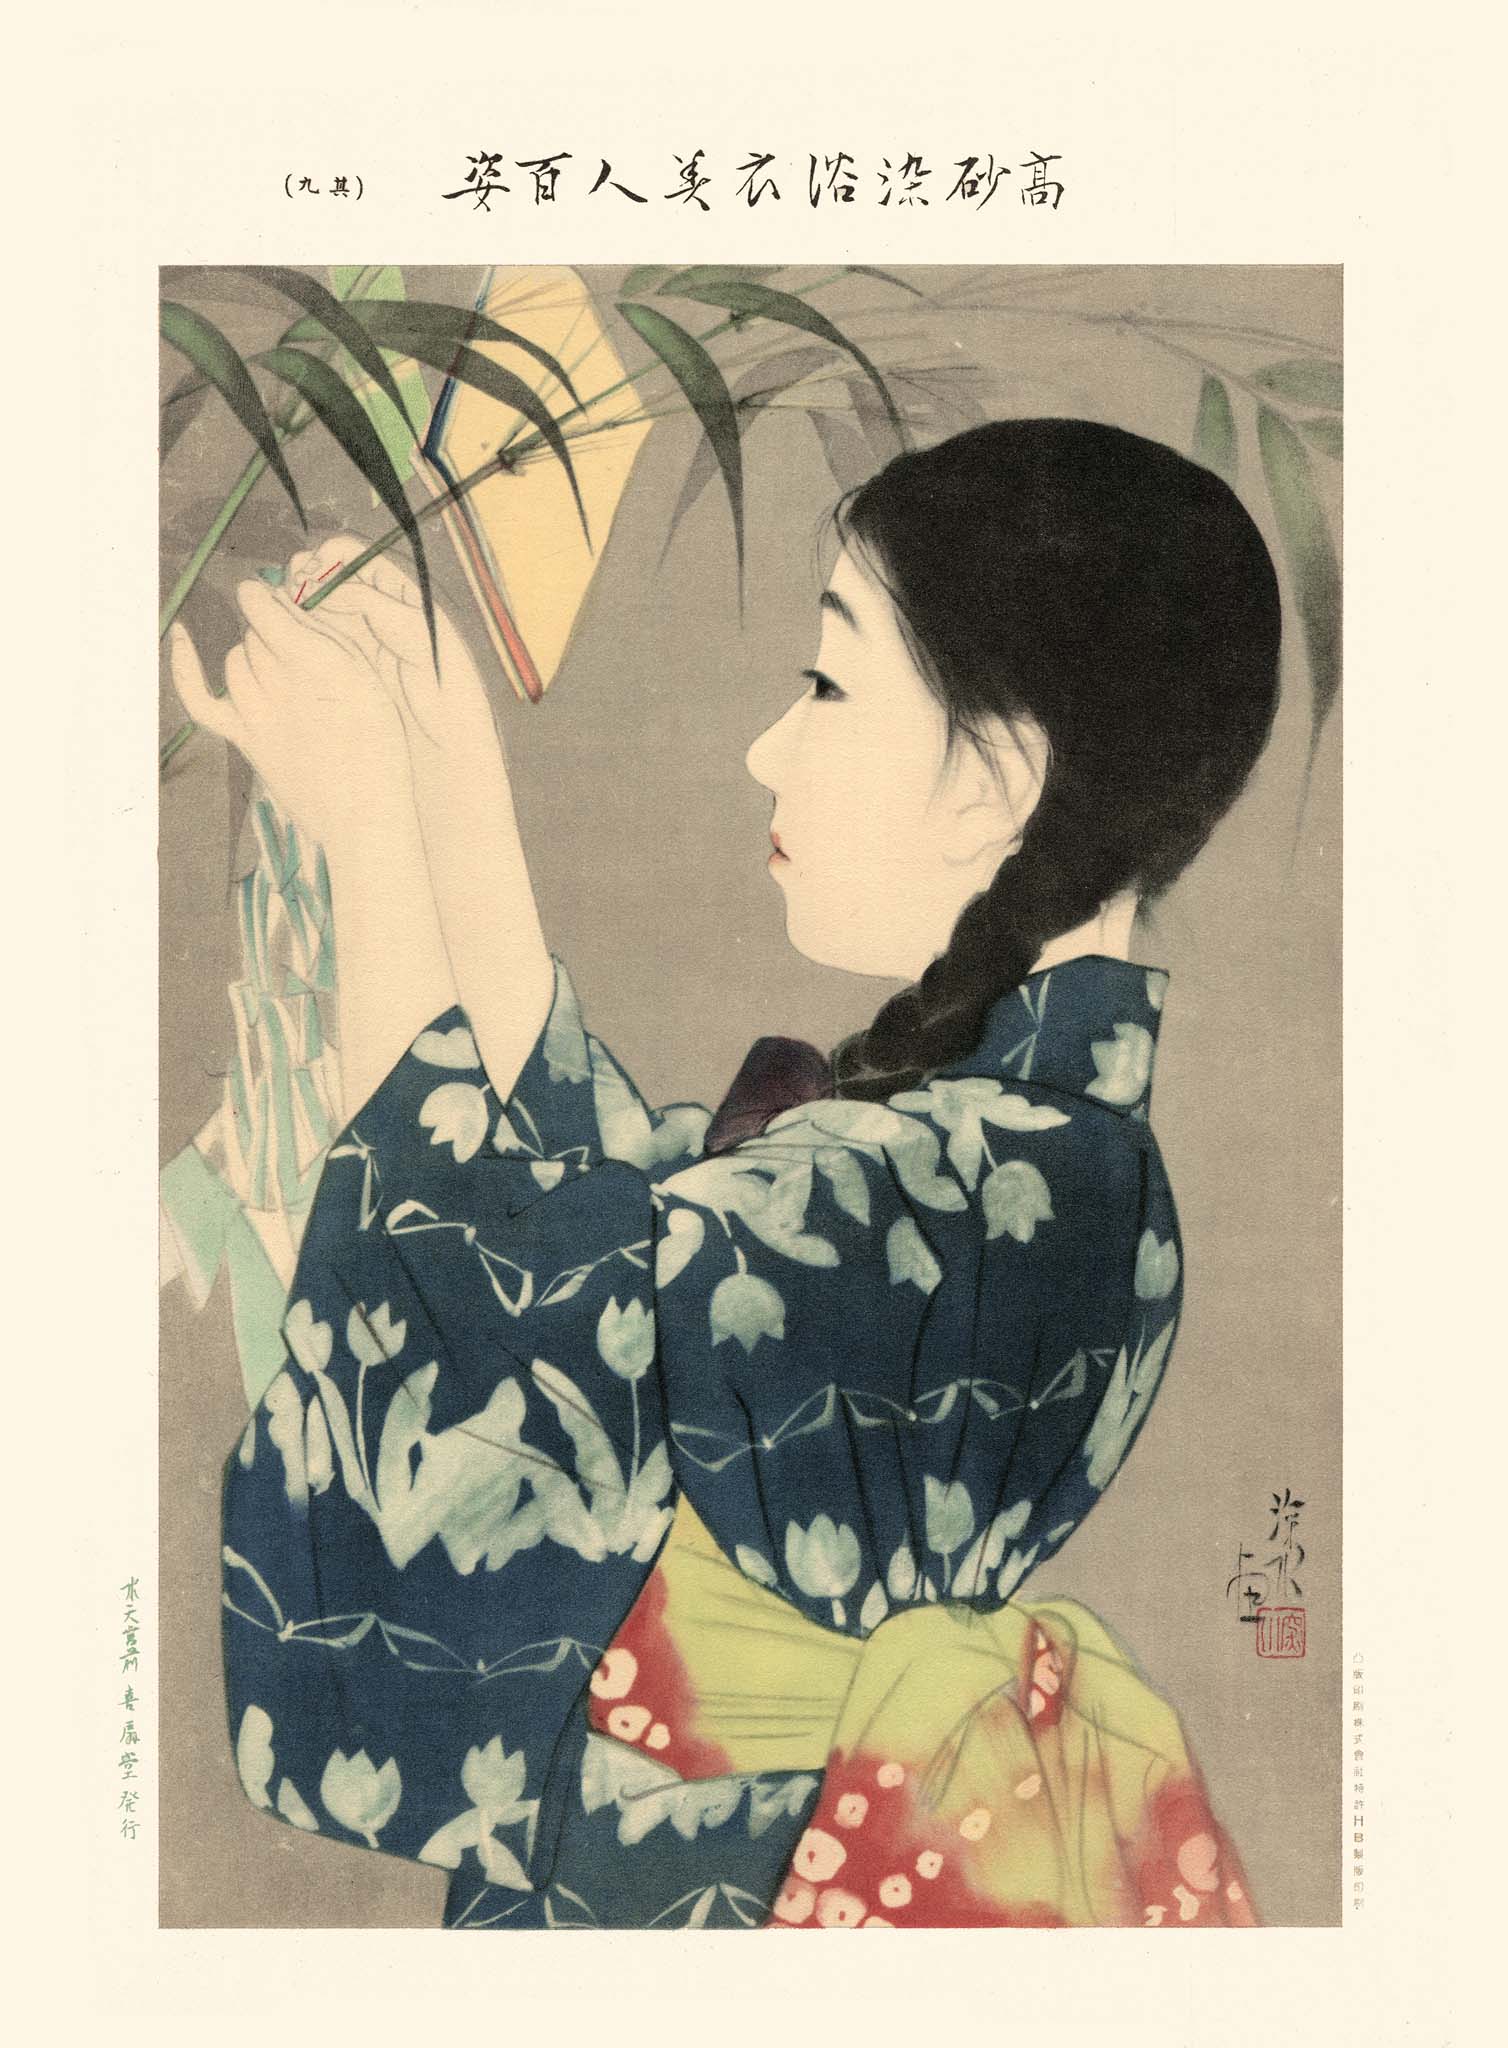 Estampe Japonaise d'une femme en kimono arrangeant des plantes